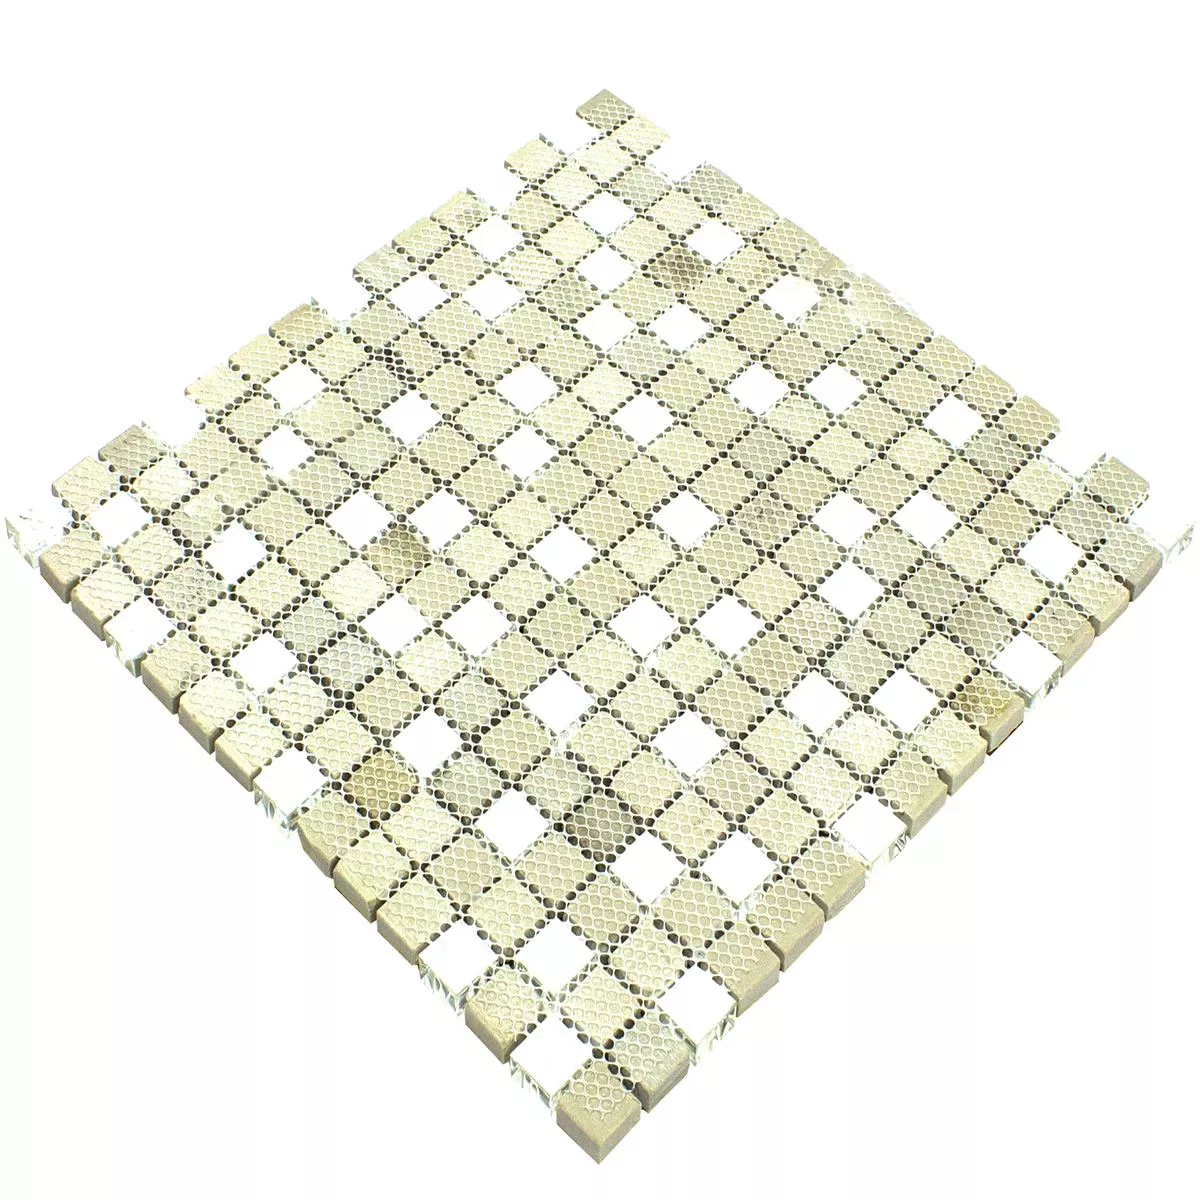 Muestra Cristal Metal Acero Inoxidable Azulejos De Mosaico Stella Blanco Plateado